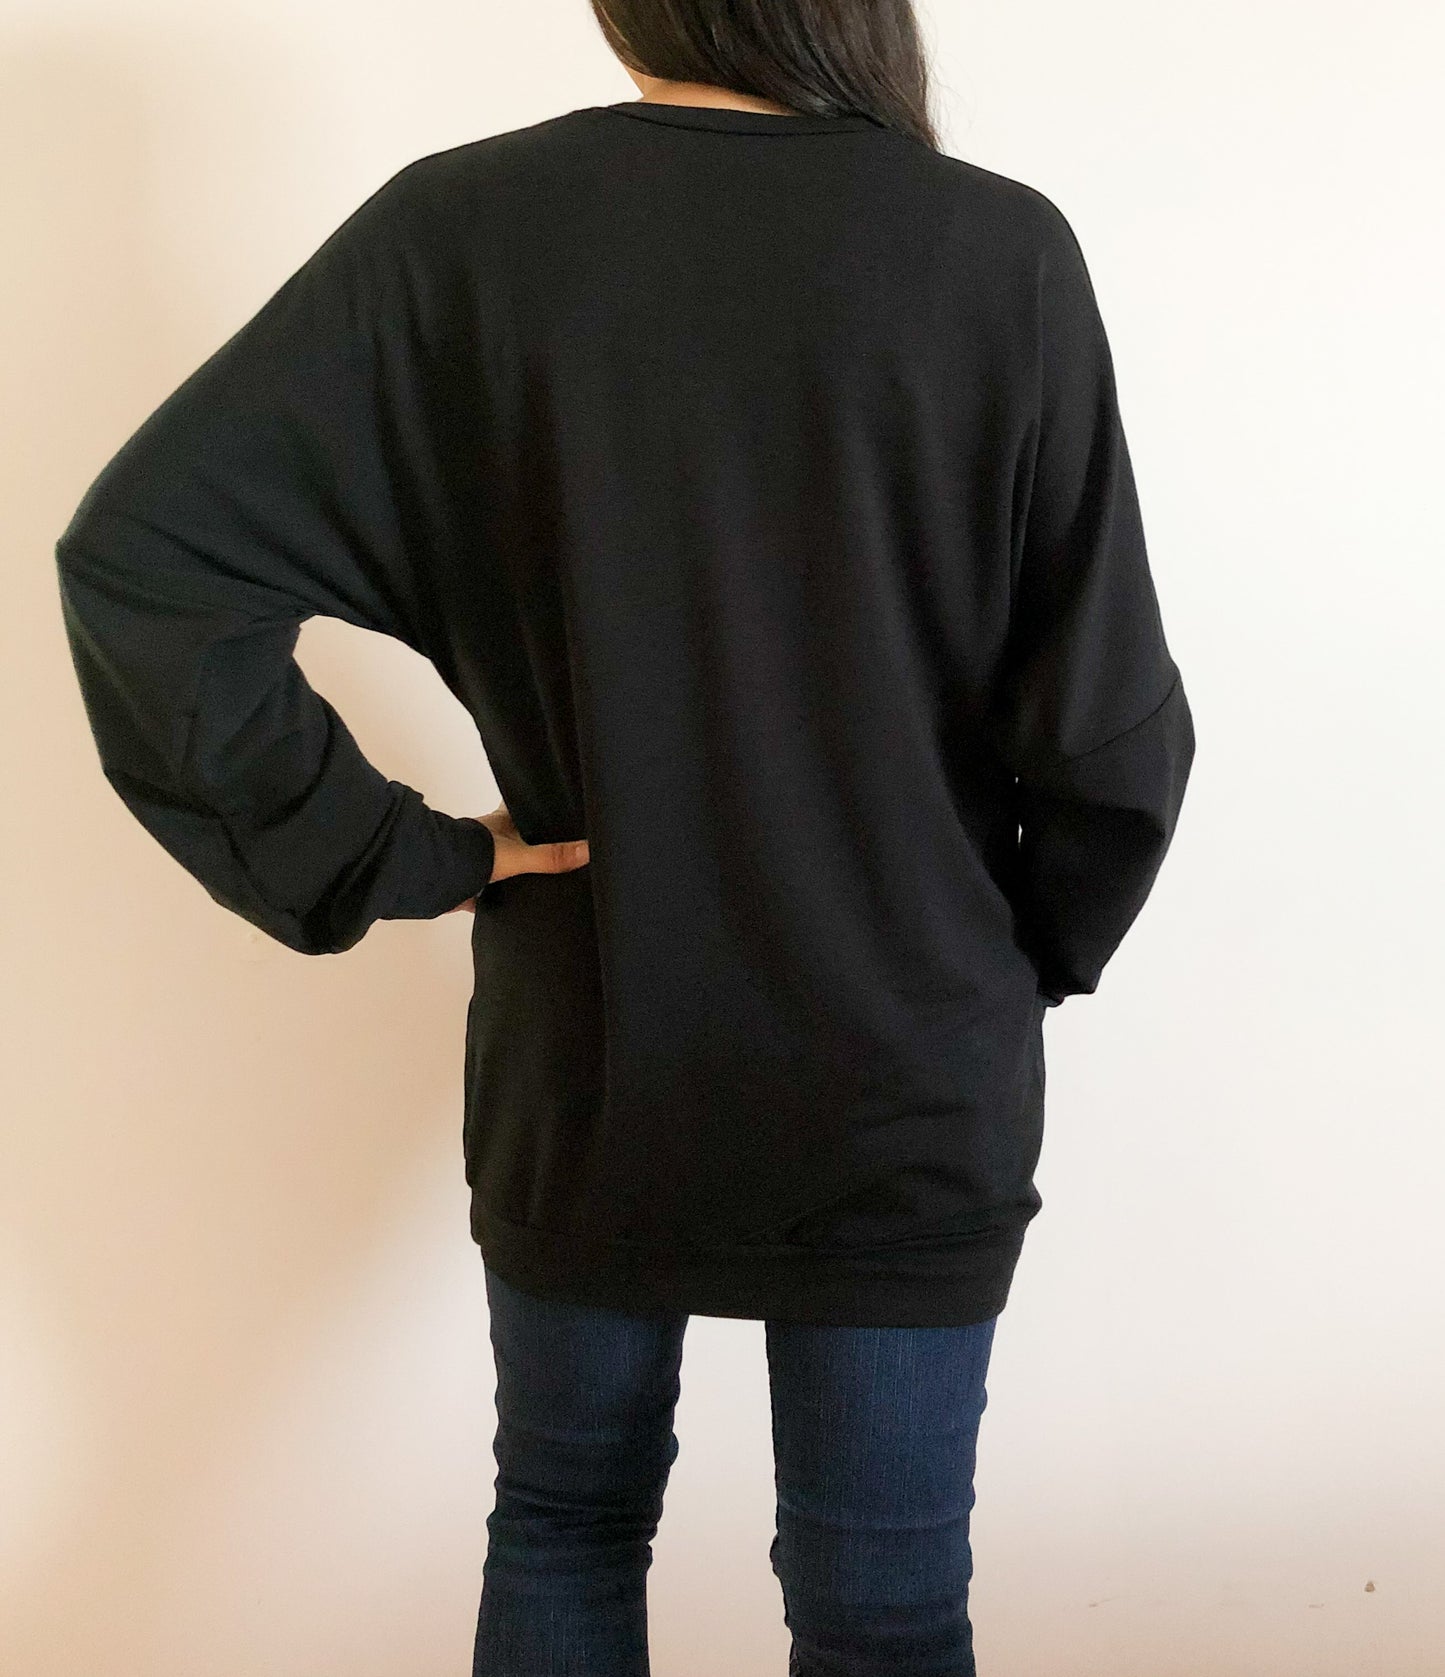 Boyfriend Sweater in Black L